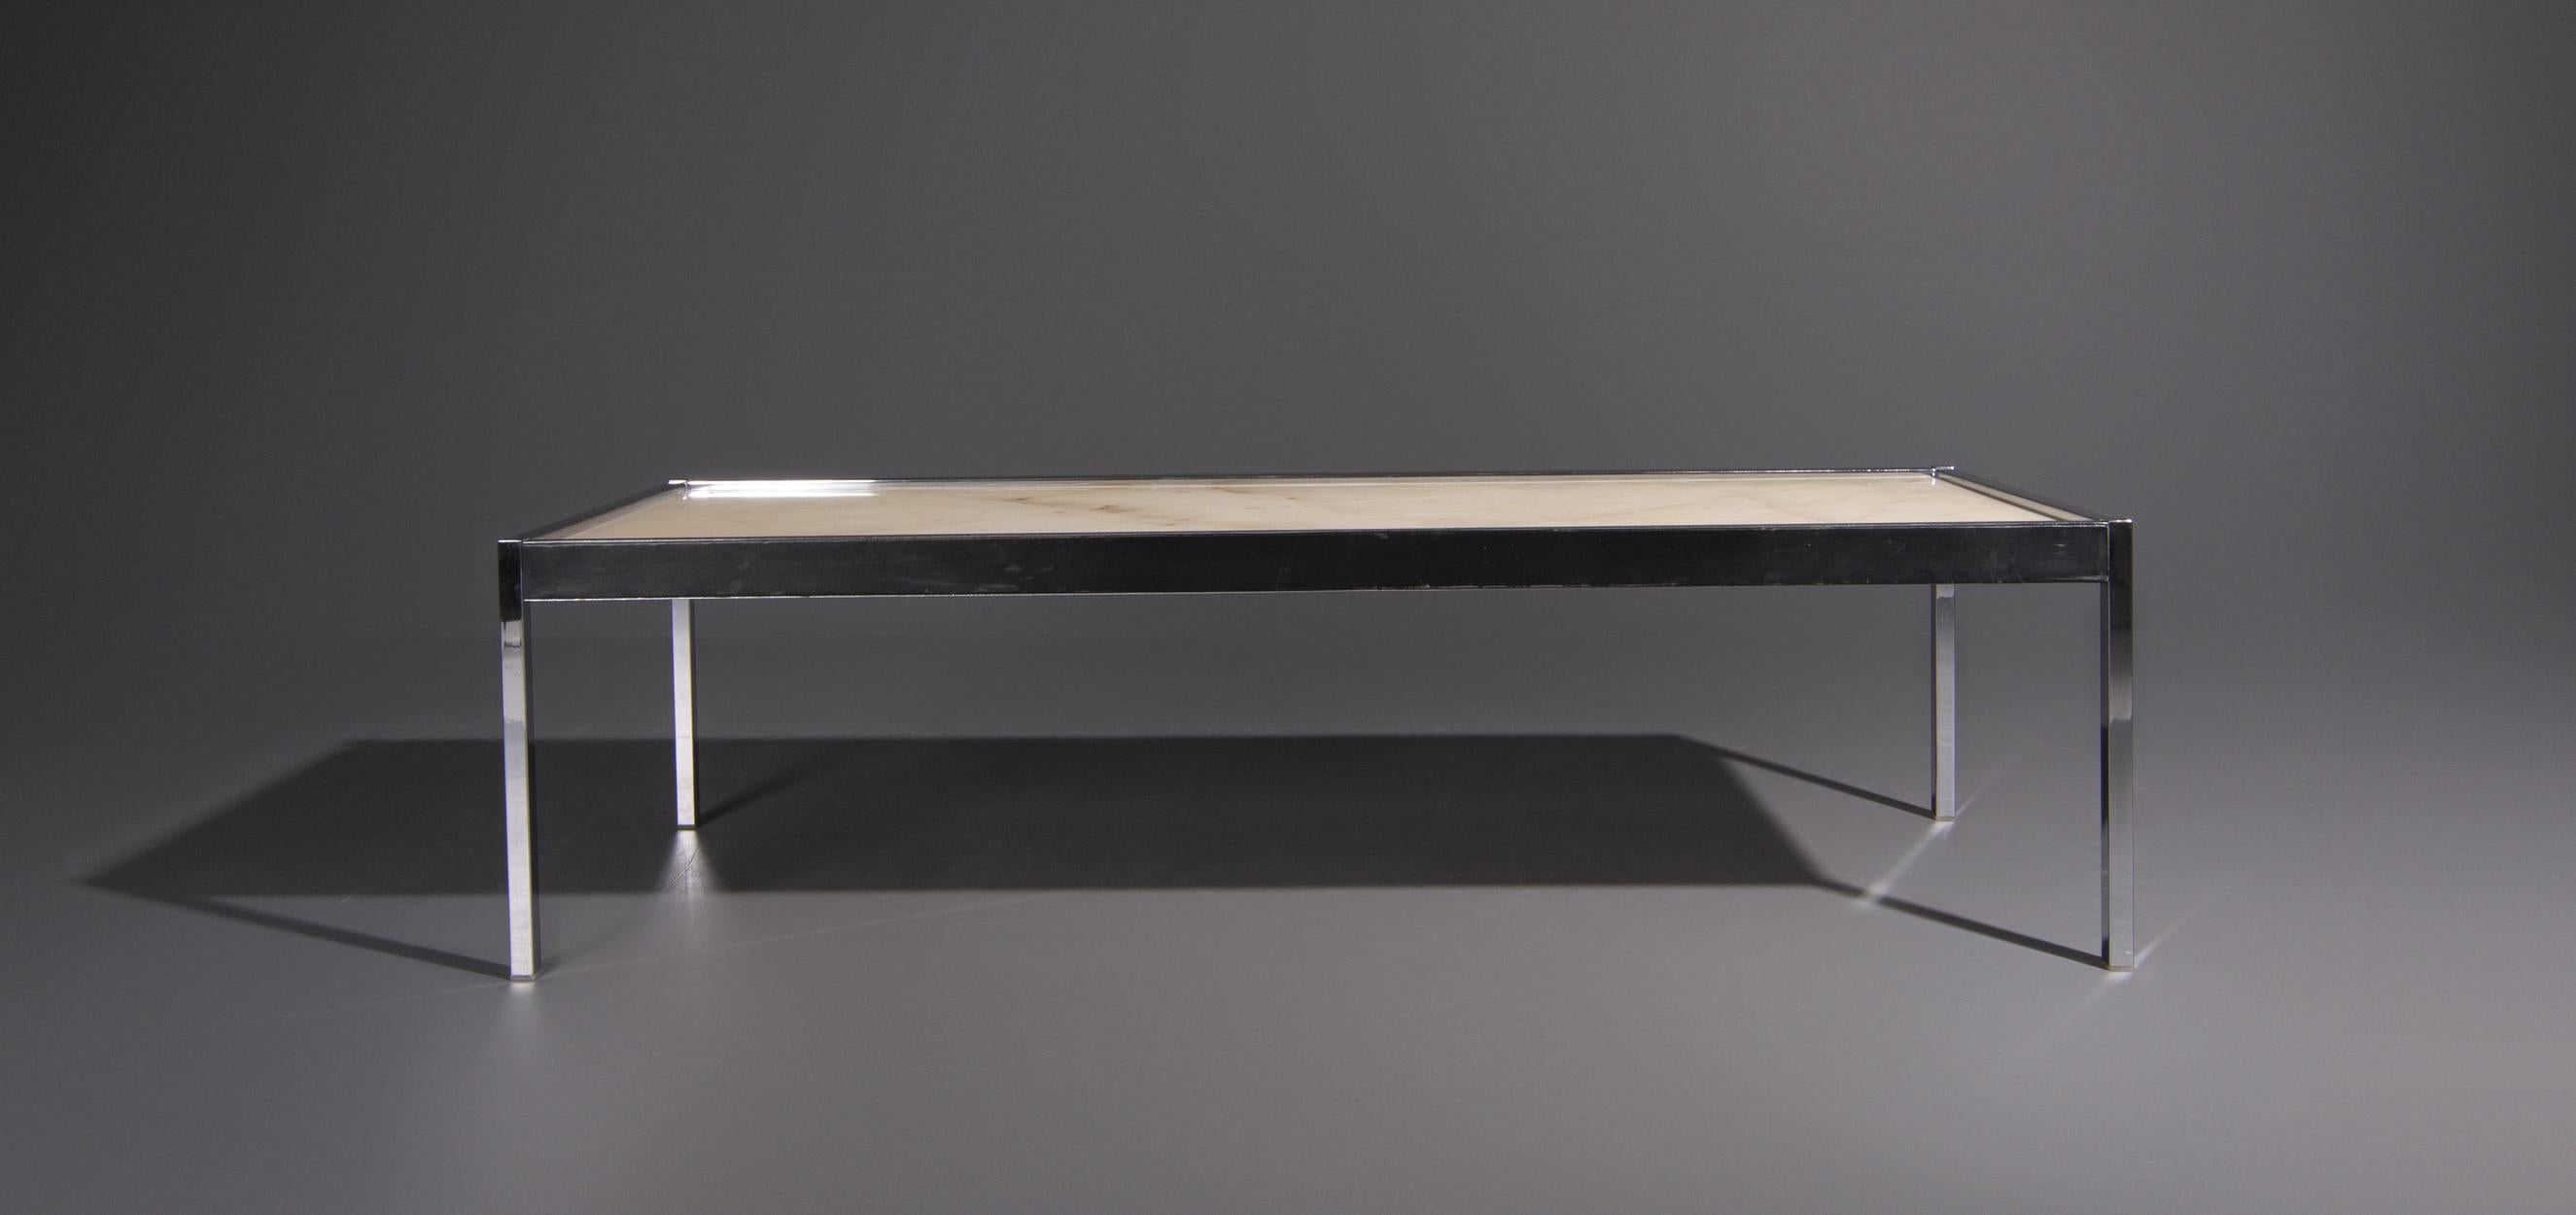 Table basse design vintage en marbre des années 1970. La table basse a un cadre en métal dont les côtés sont recouverts de cuir. La table basse a un design minimaliste et le plateau en marbre présente un motif unique.

Cette table basse est en